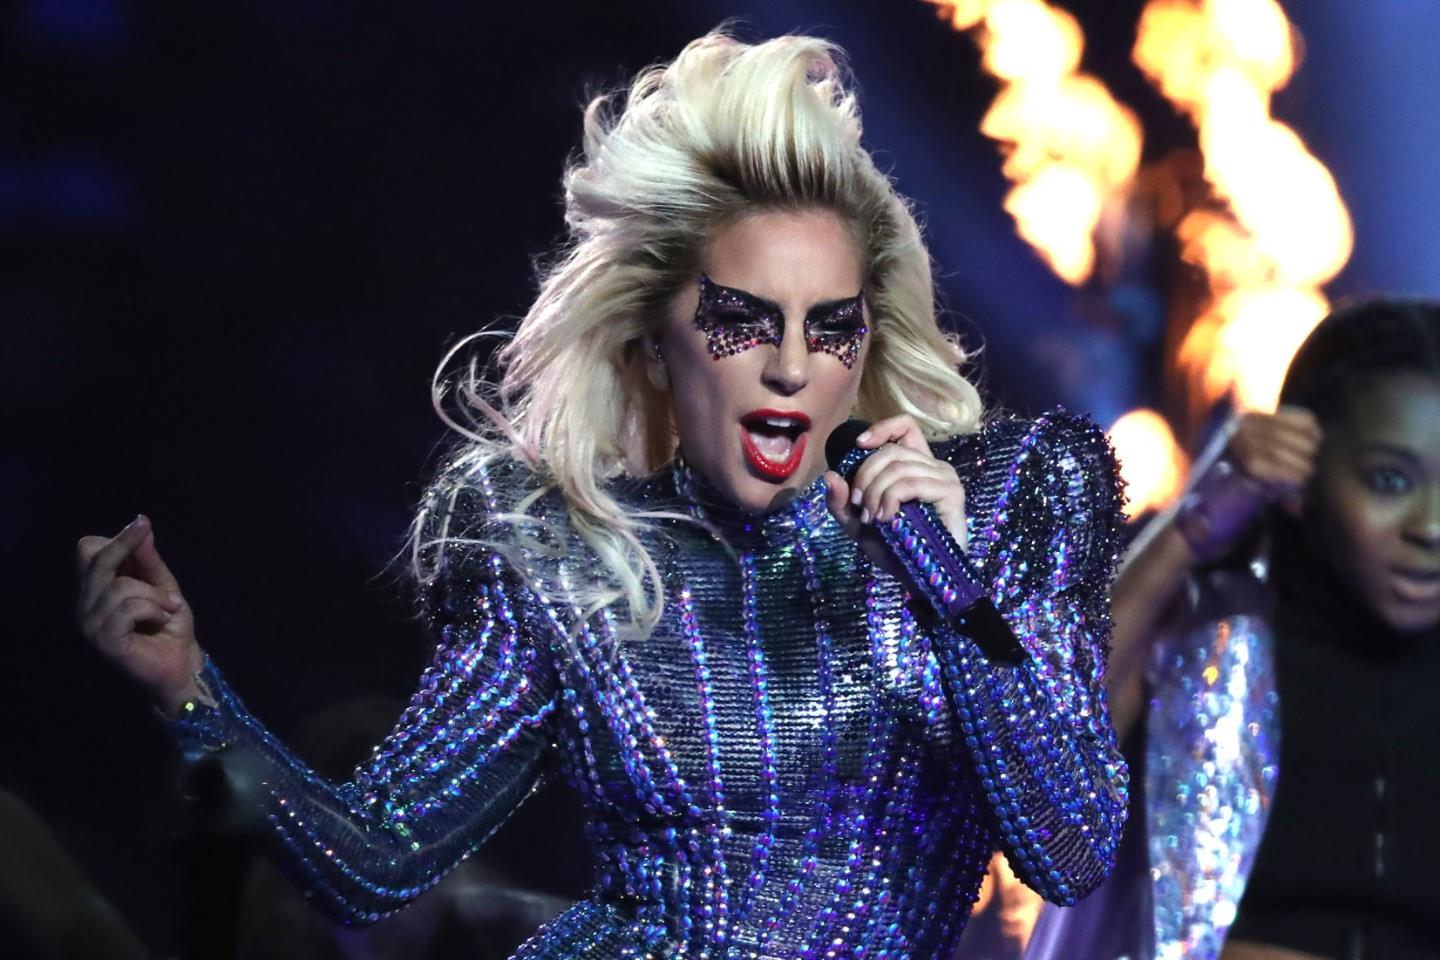 eurovisão,lady gaga,final,google,festival, Lady Gaga vai atuar na final do festival da Eurovisão, avança Google